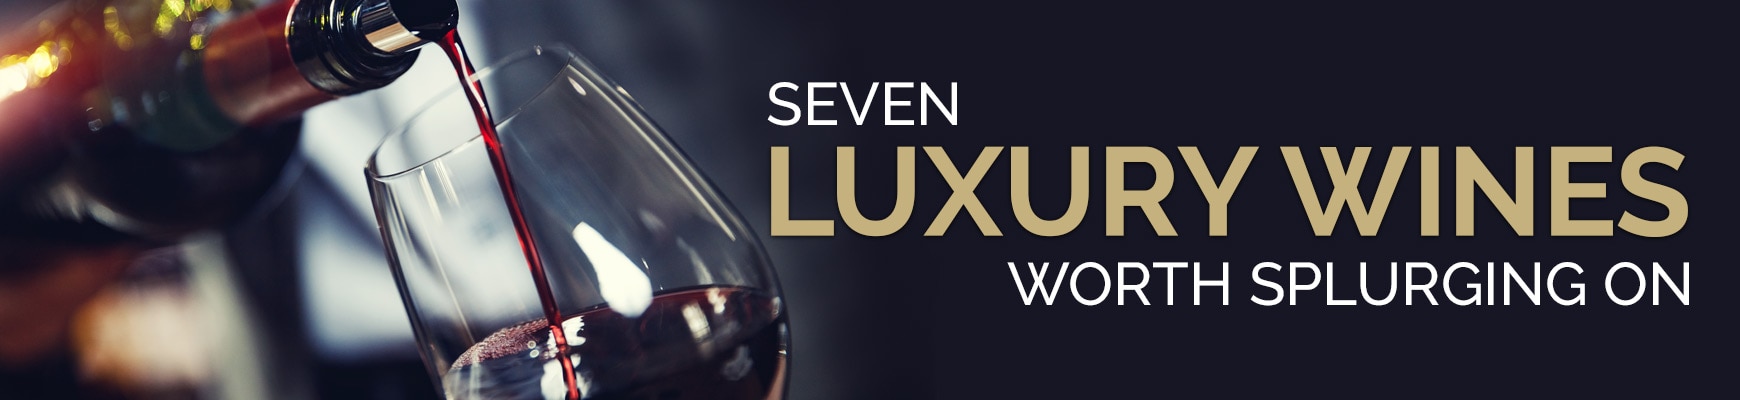 Sevent Luxury Wines Worth Splurging On